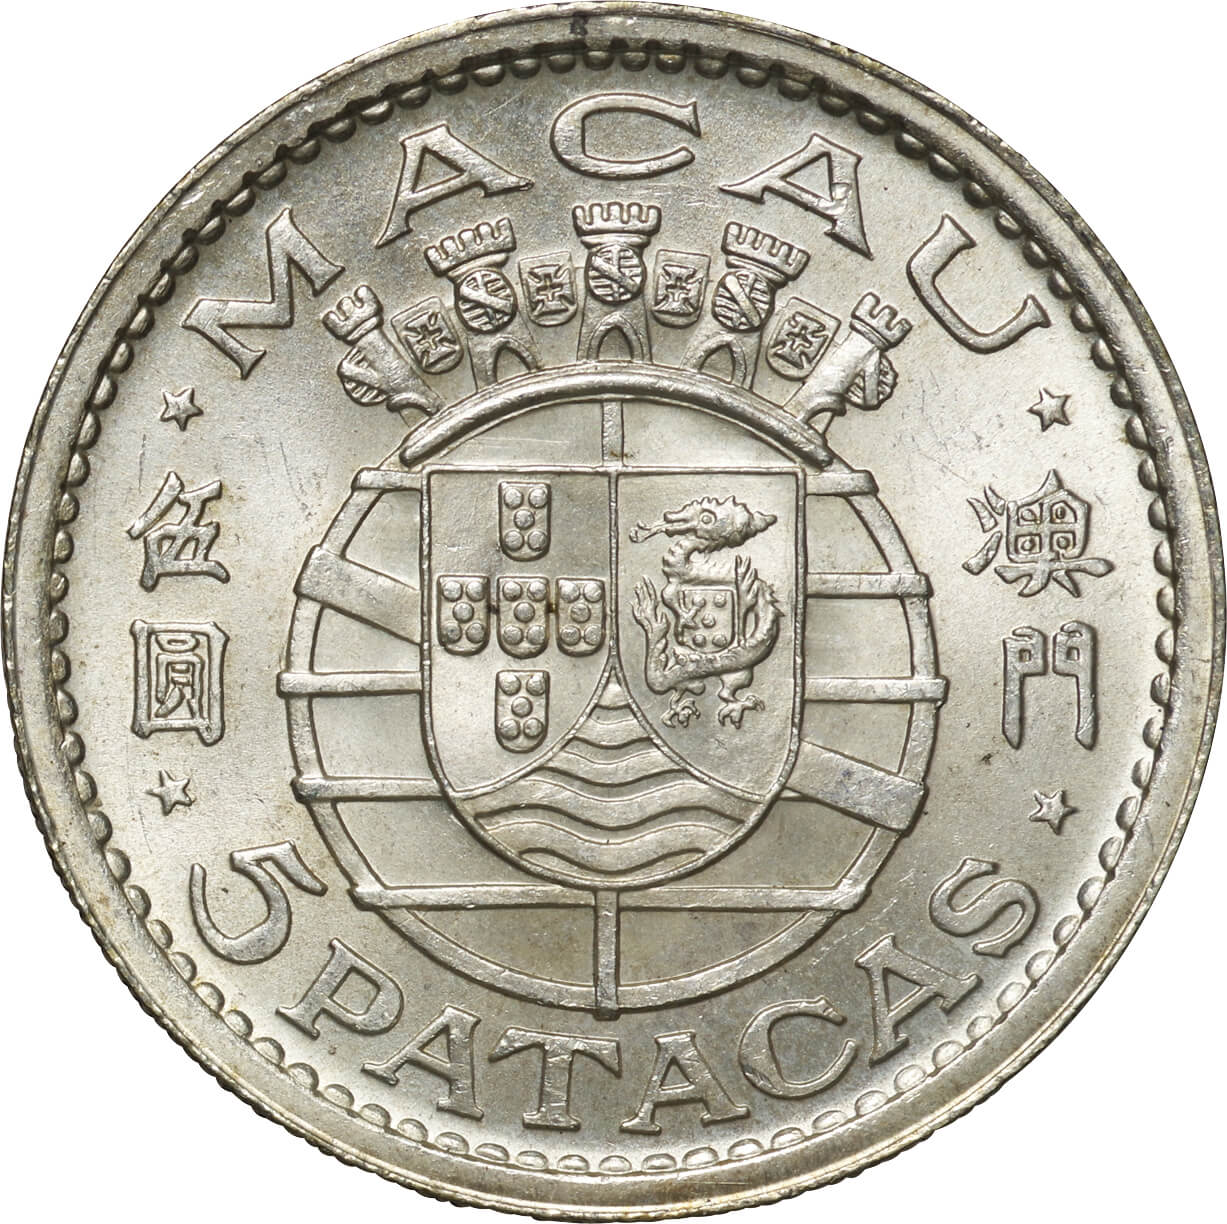 マカオ-Macao. 1952. 未使用. UNC. Silver. 5パタカ(Patacas). 国章 5 